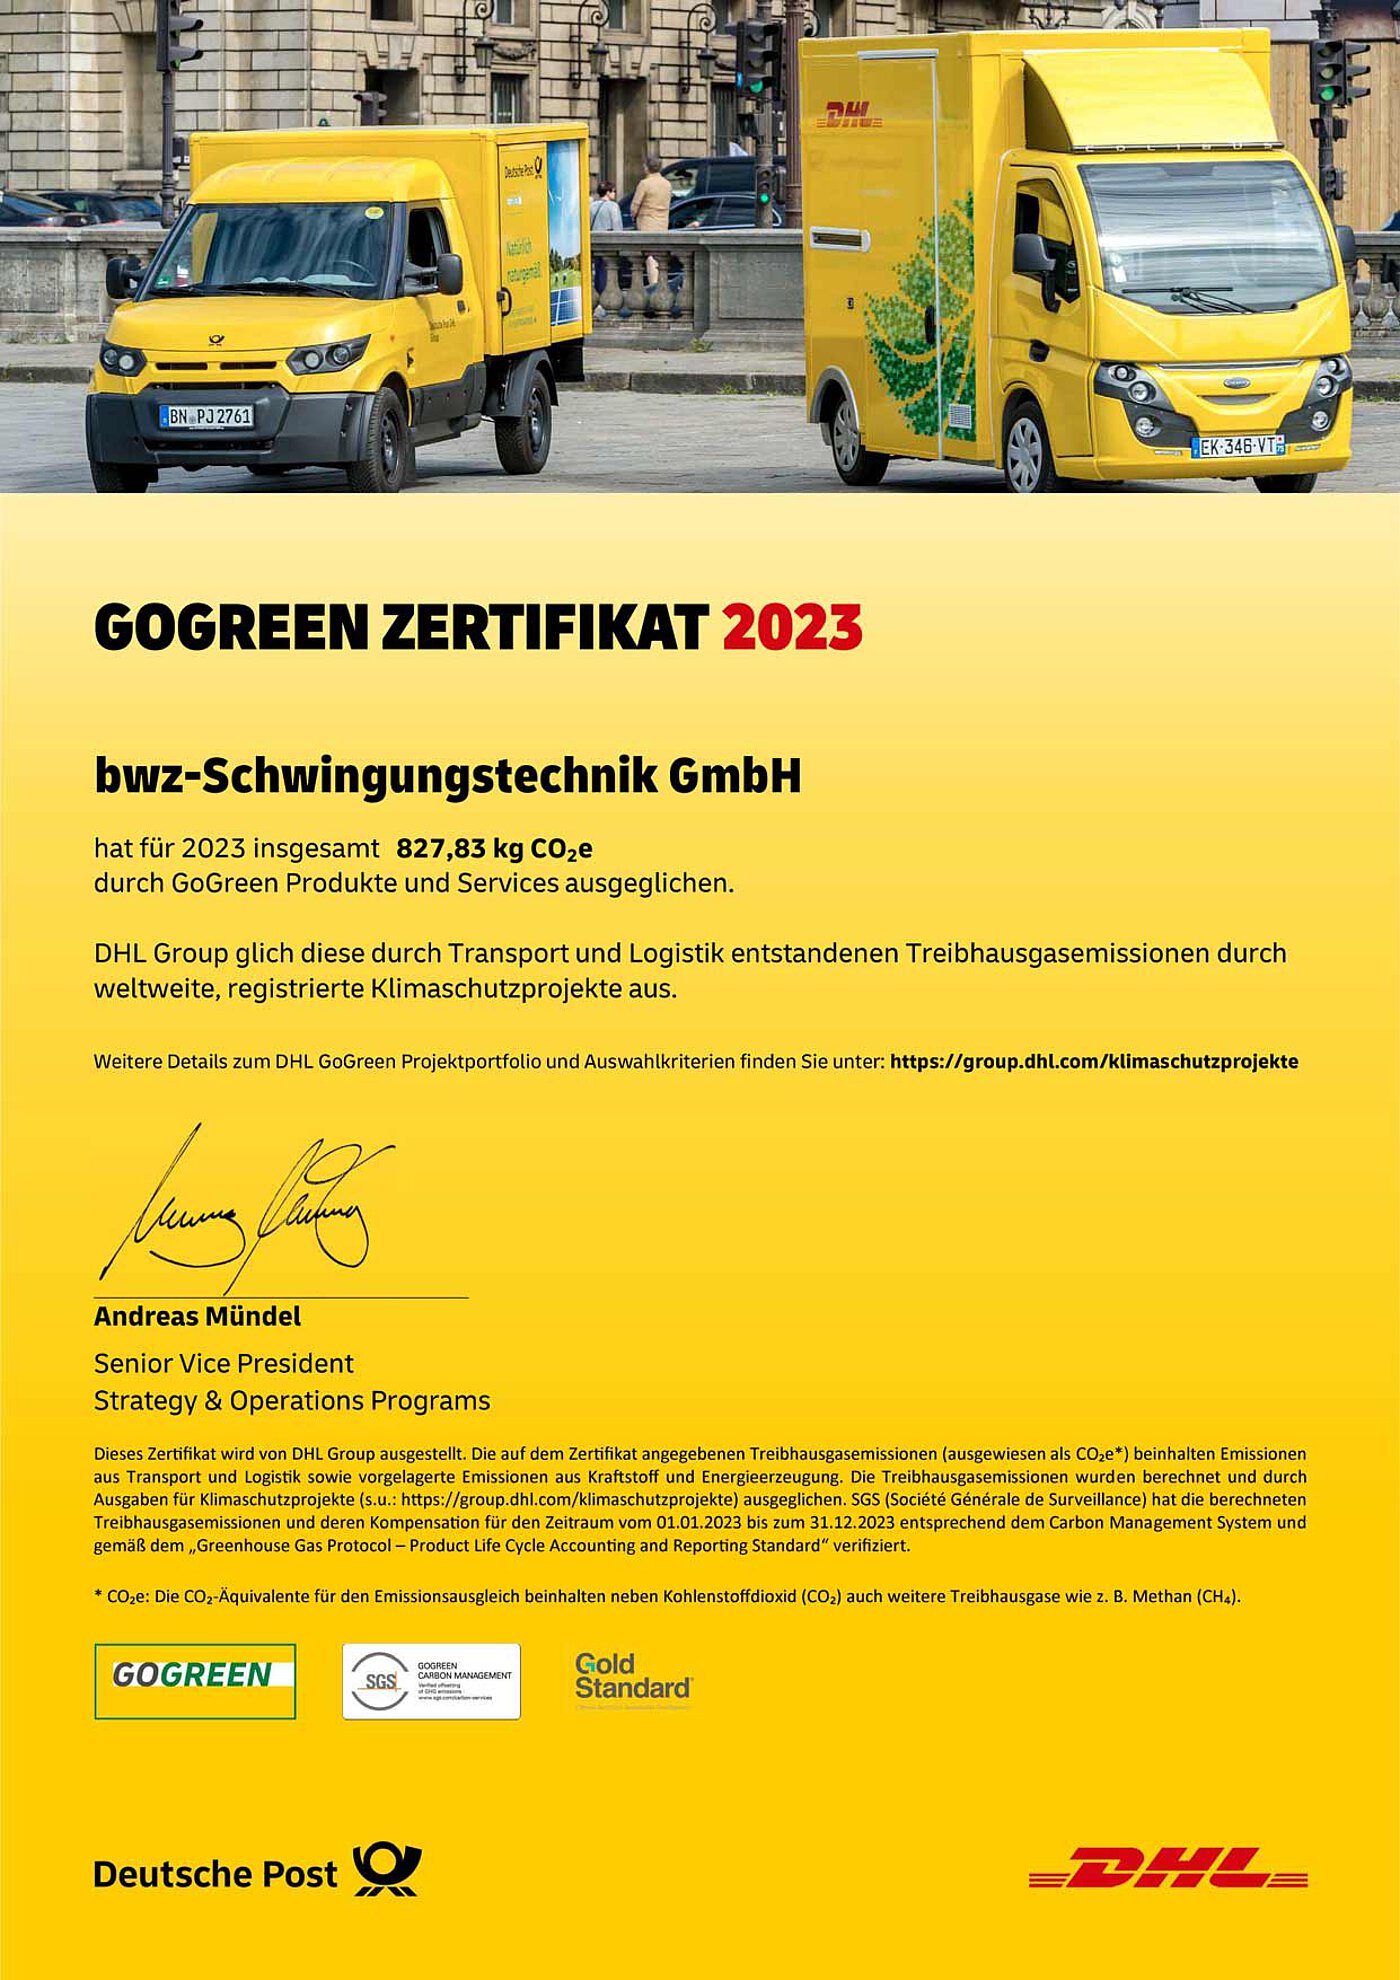 eine gelbe Urkunde vom Paketdienstleister DHL, auf welcher vermerkt ist, daß bwz Schwingungstechnik durch die Nutzung von GoGreen Produkten 827,83 KG CO2-Äquivalente im Jahr 2023 eingespart hat